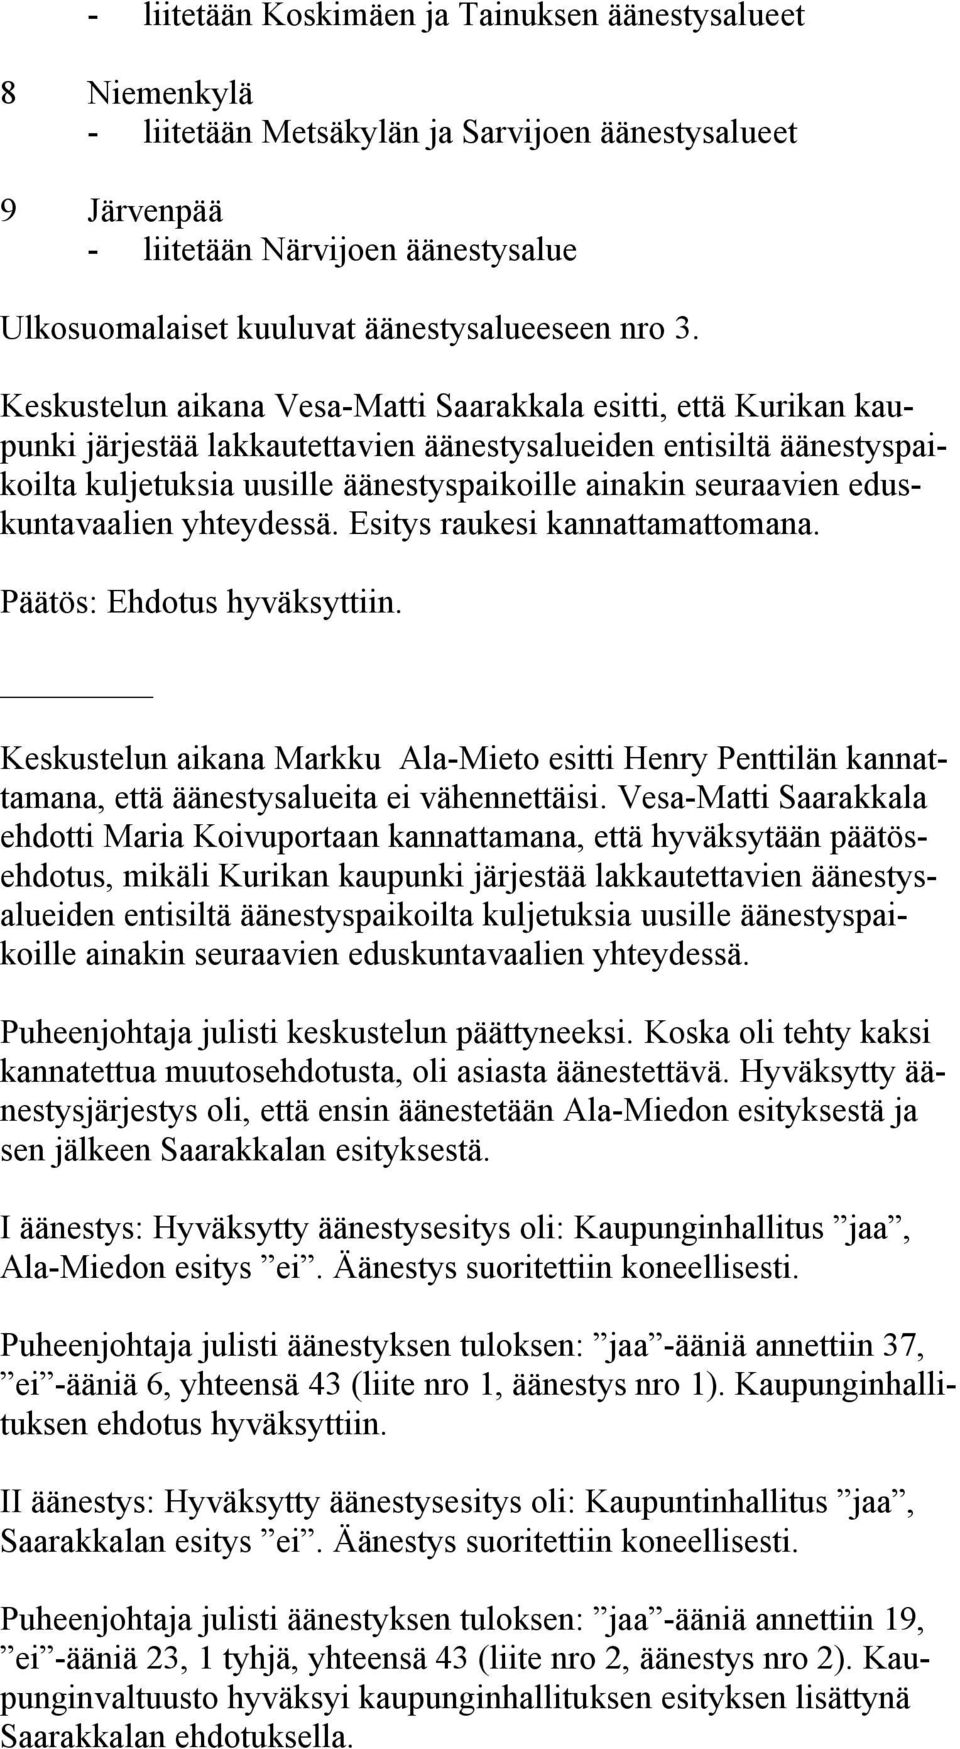 Keskustelun aikana Vesa-Matti Saarakkala esitti, että Kurikan kaupunki järjestää lakkautettavien äänestysalueiden entisiltä äänestyspaikoilta kuljetuksia uusille äänestyspaikoille ainakin seuraavien